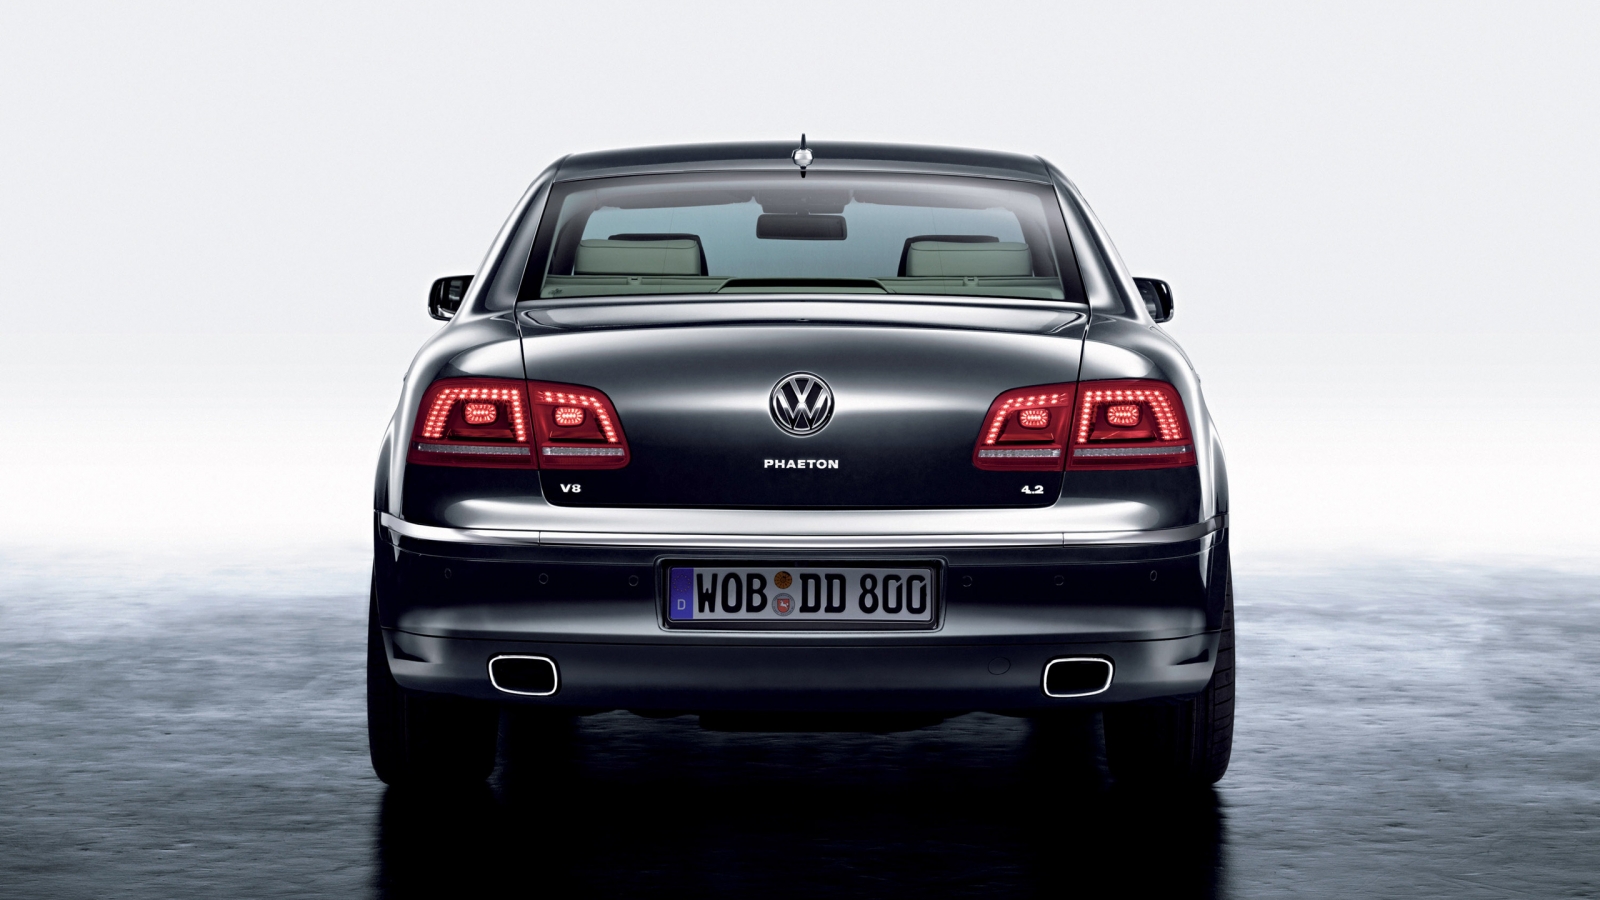 Volkswagen Phaeton Rear for 1600 x 900 HDTV resolution